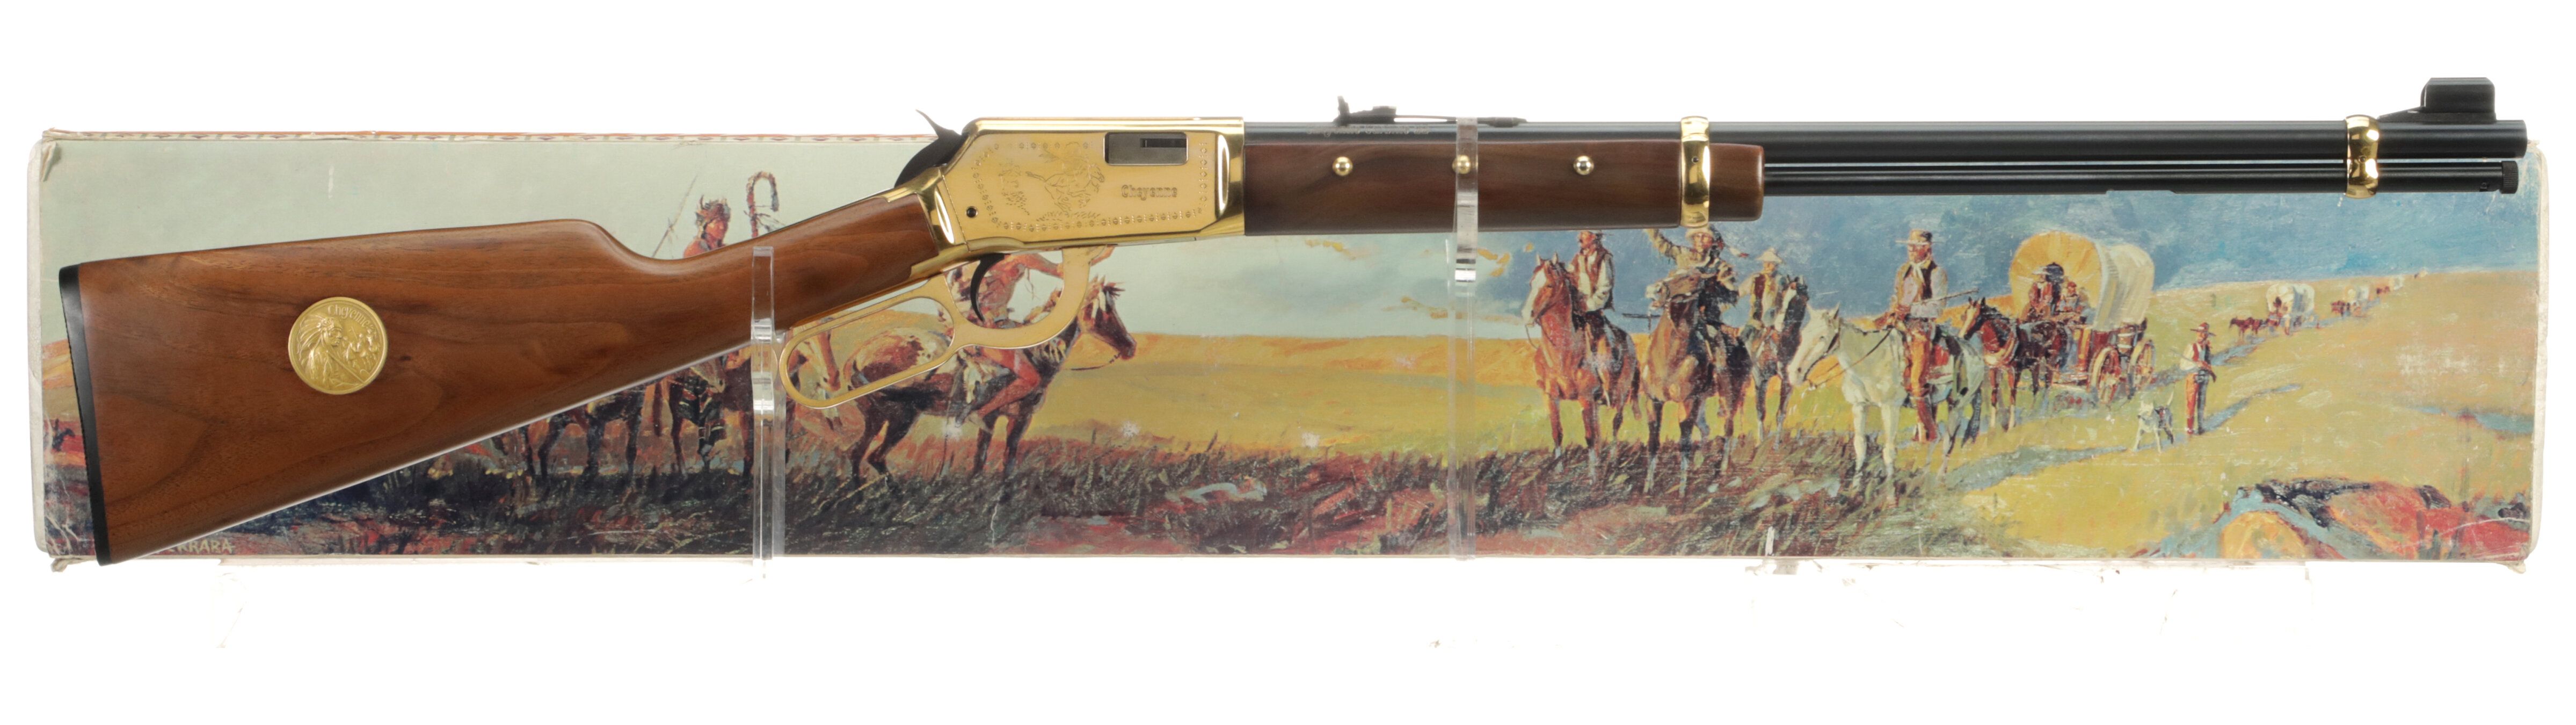 Winchester Model 9422 Cheyenne Commemorative Carbine